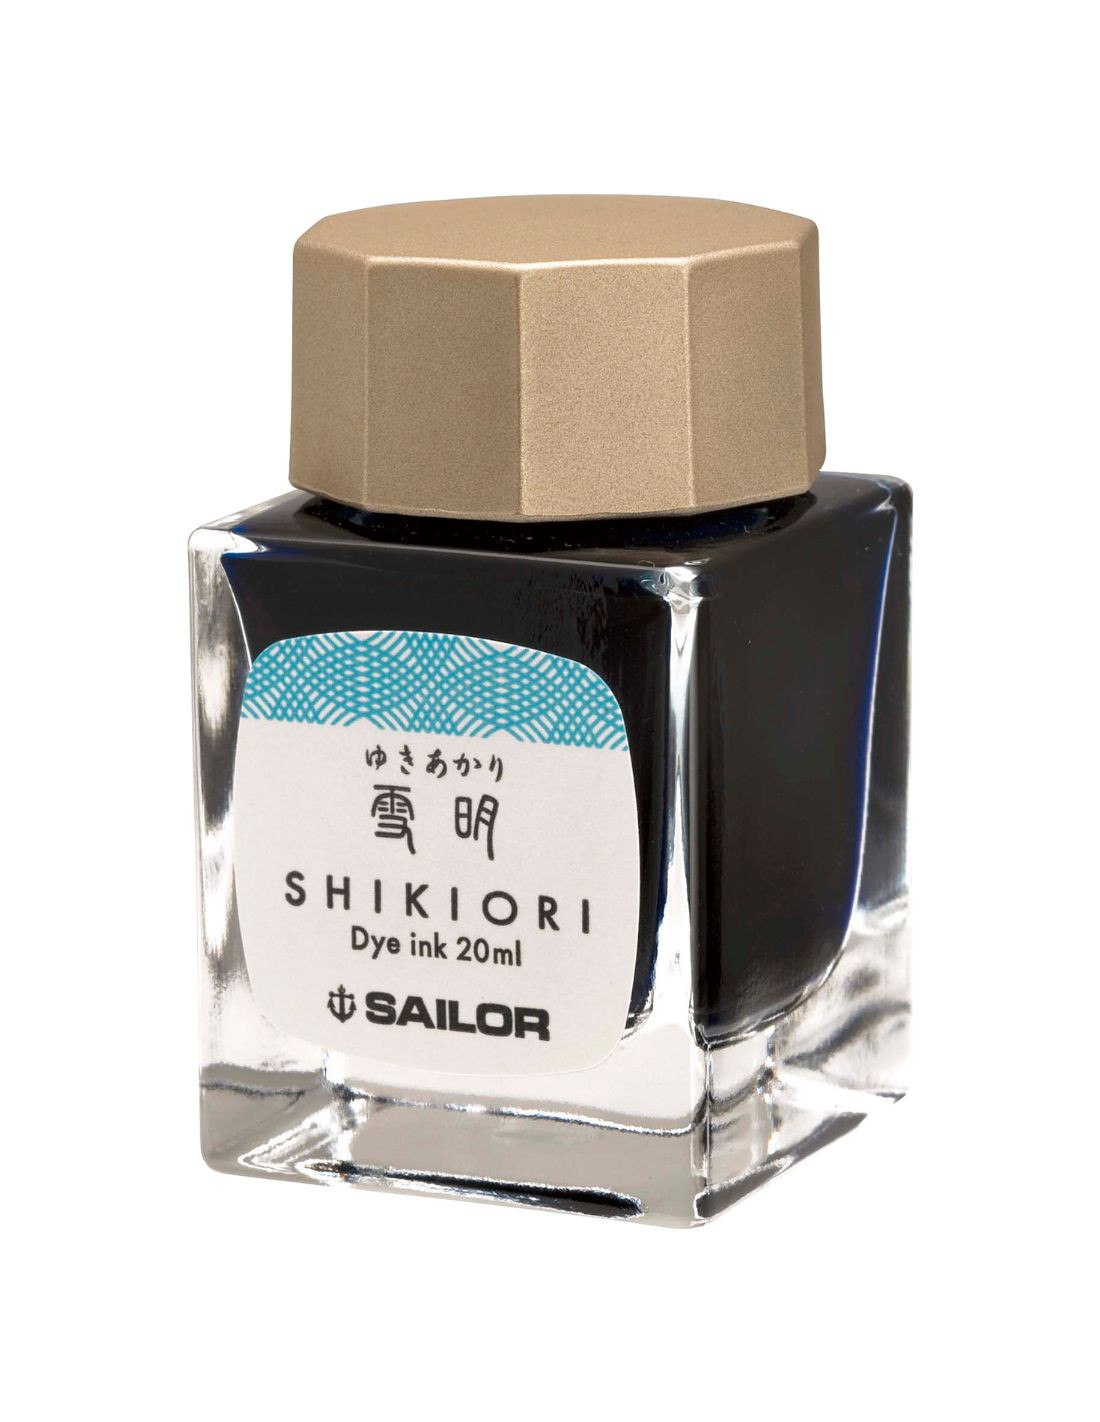 Shikiori Izayoi-no-Yume Ink - Yuki-Akari (Snow Light Blue) - 20ml - Sailor